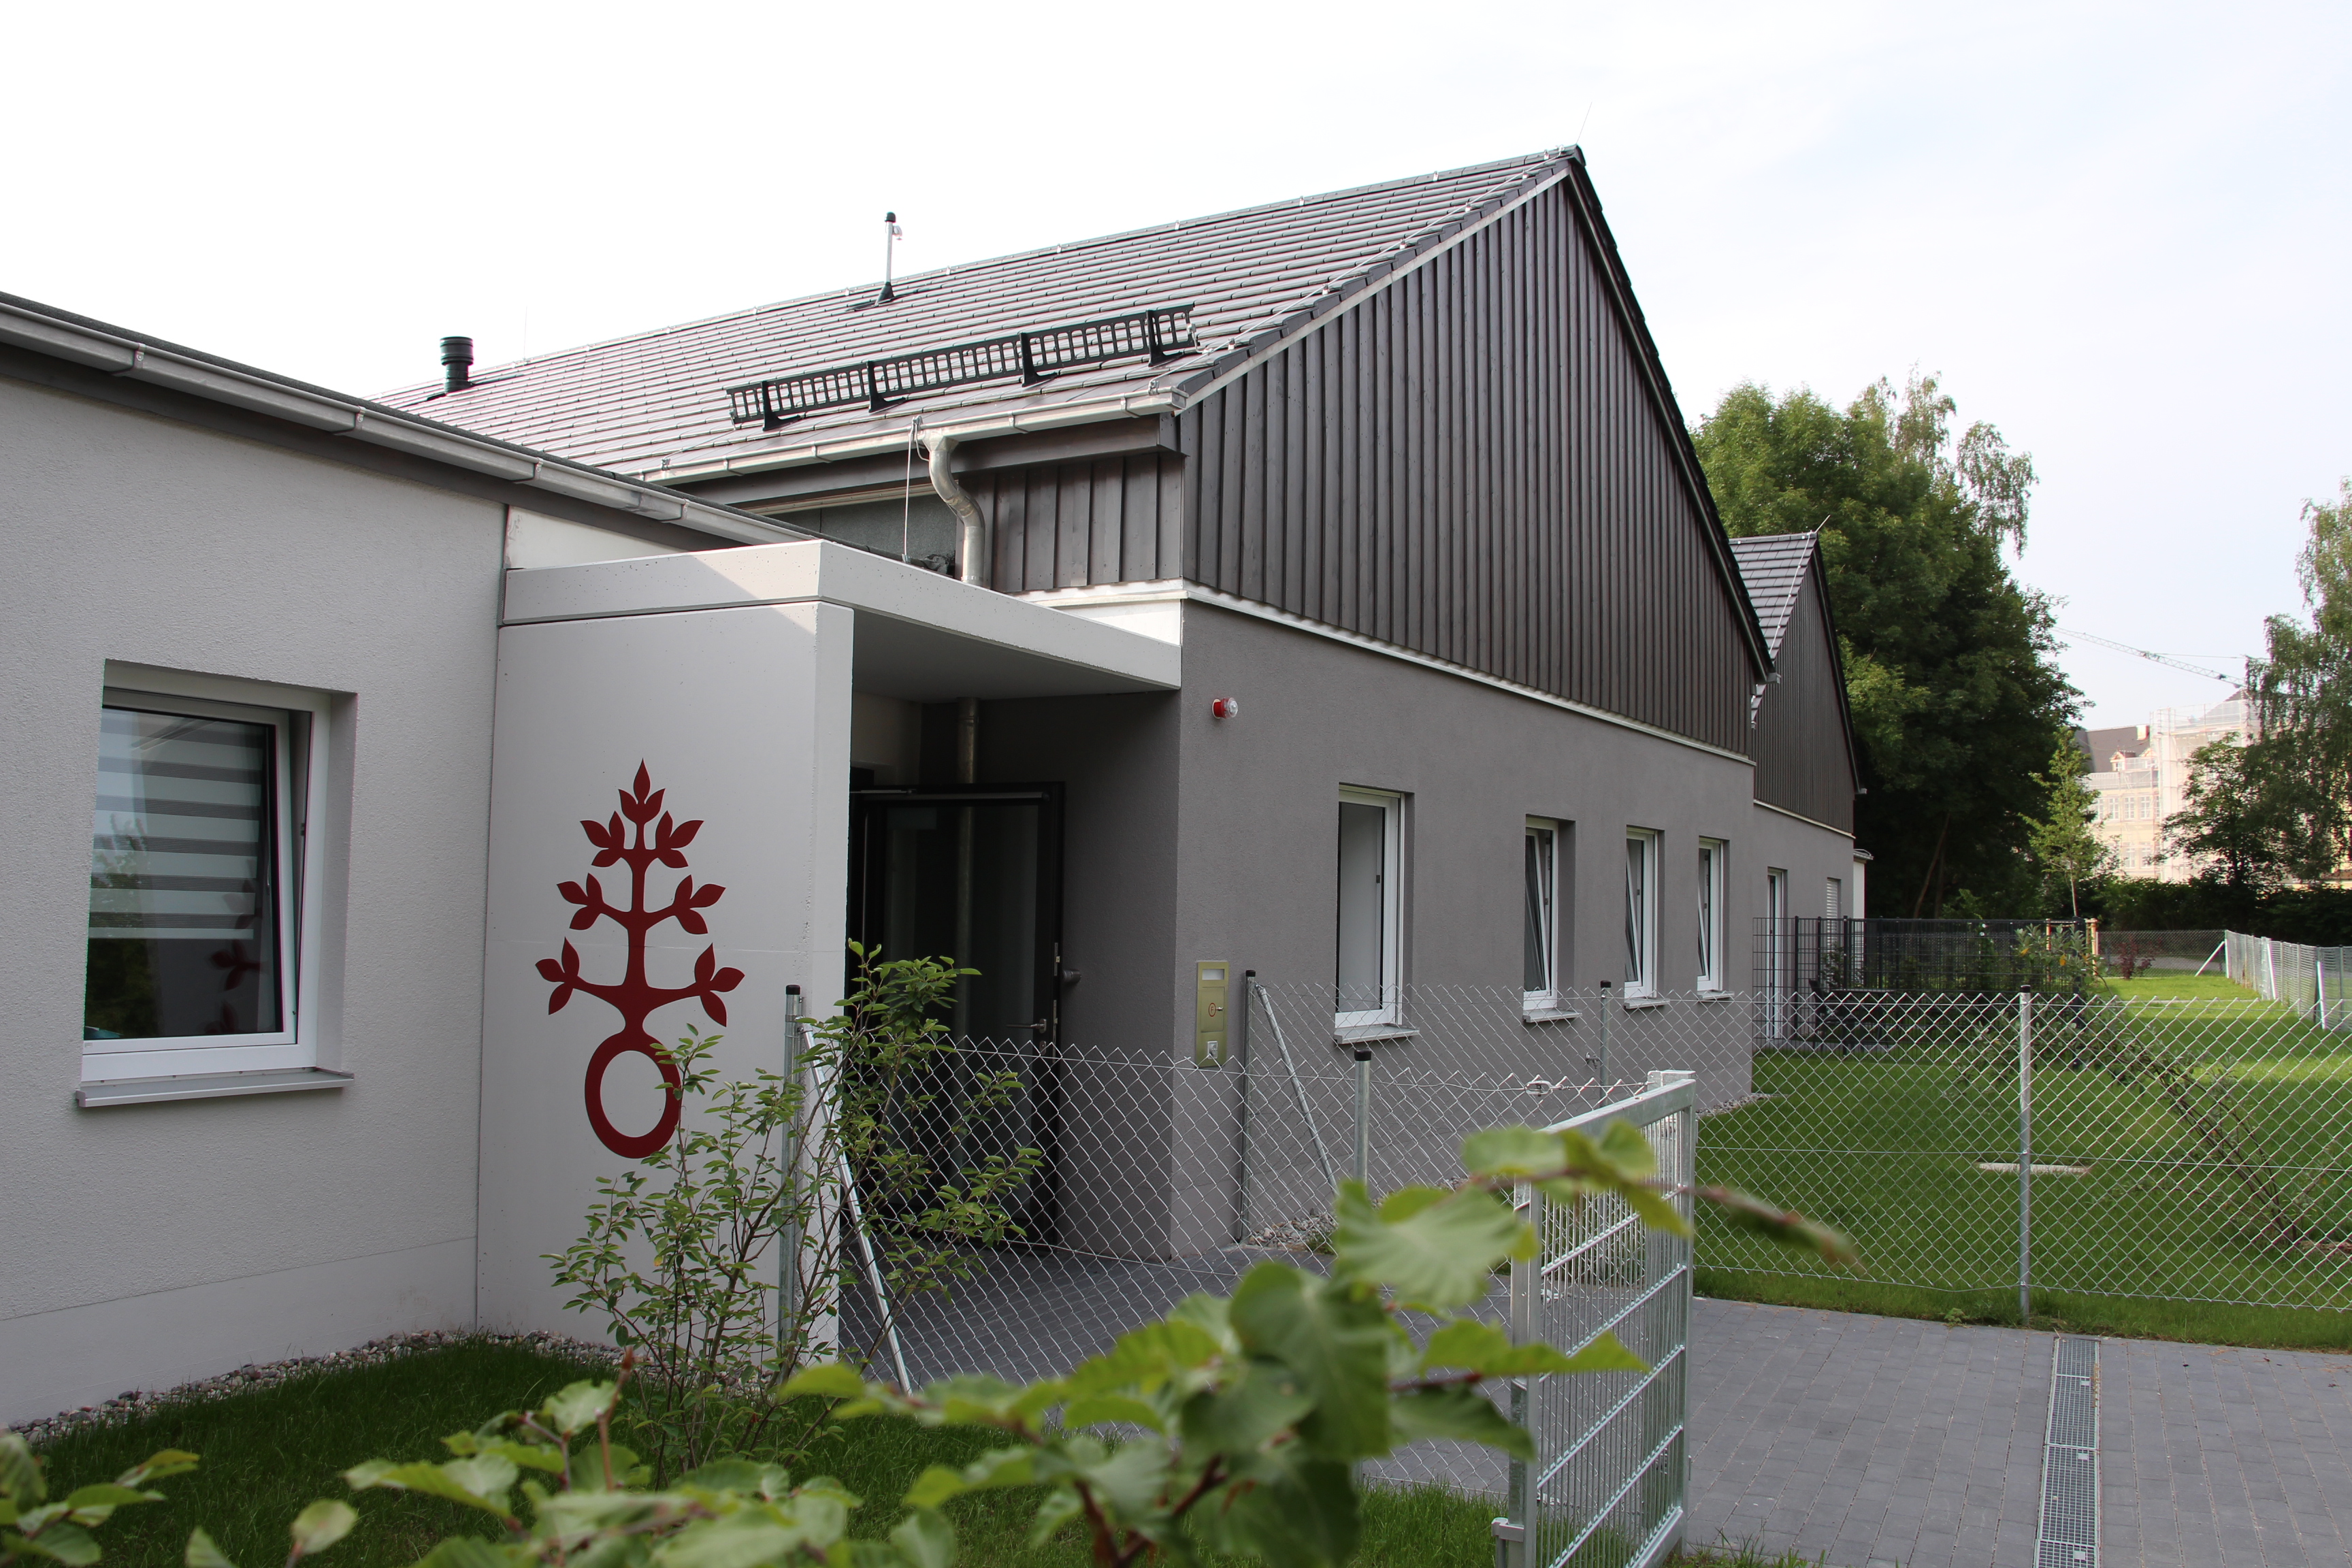 Kirchlicher Segen für neue Wohneinrichtungen in Ursberg